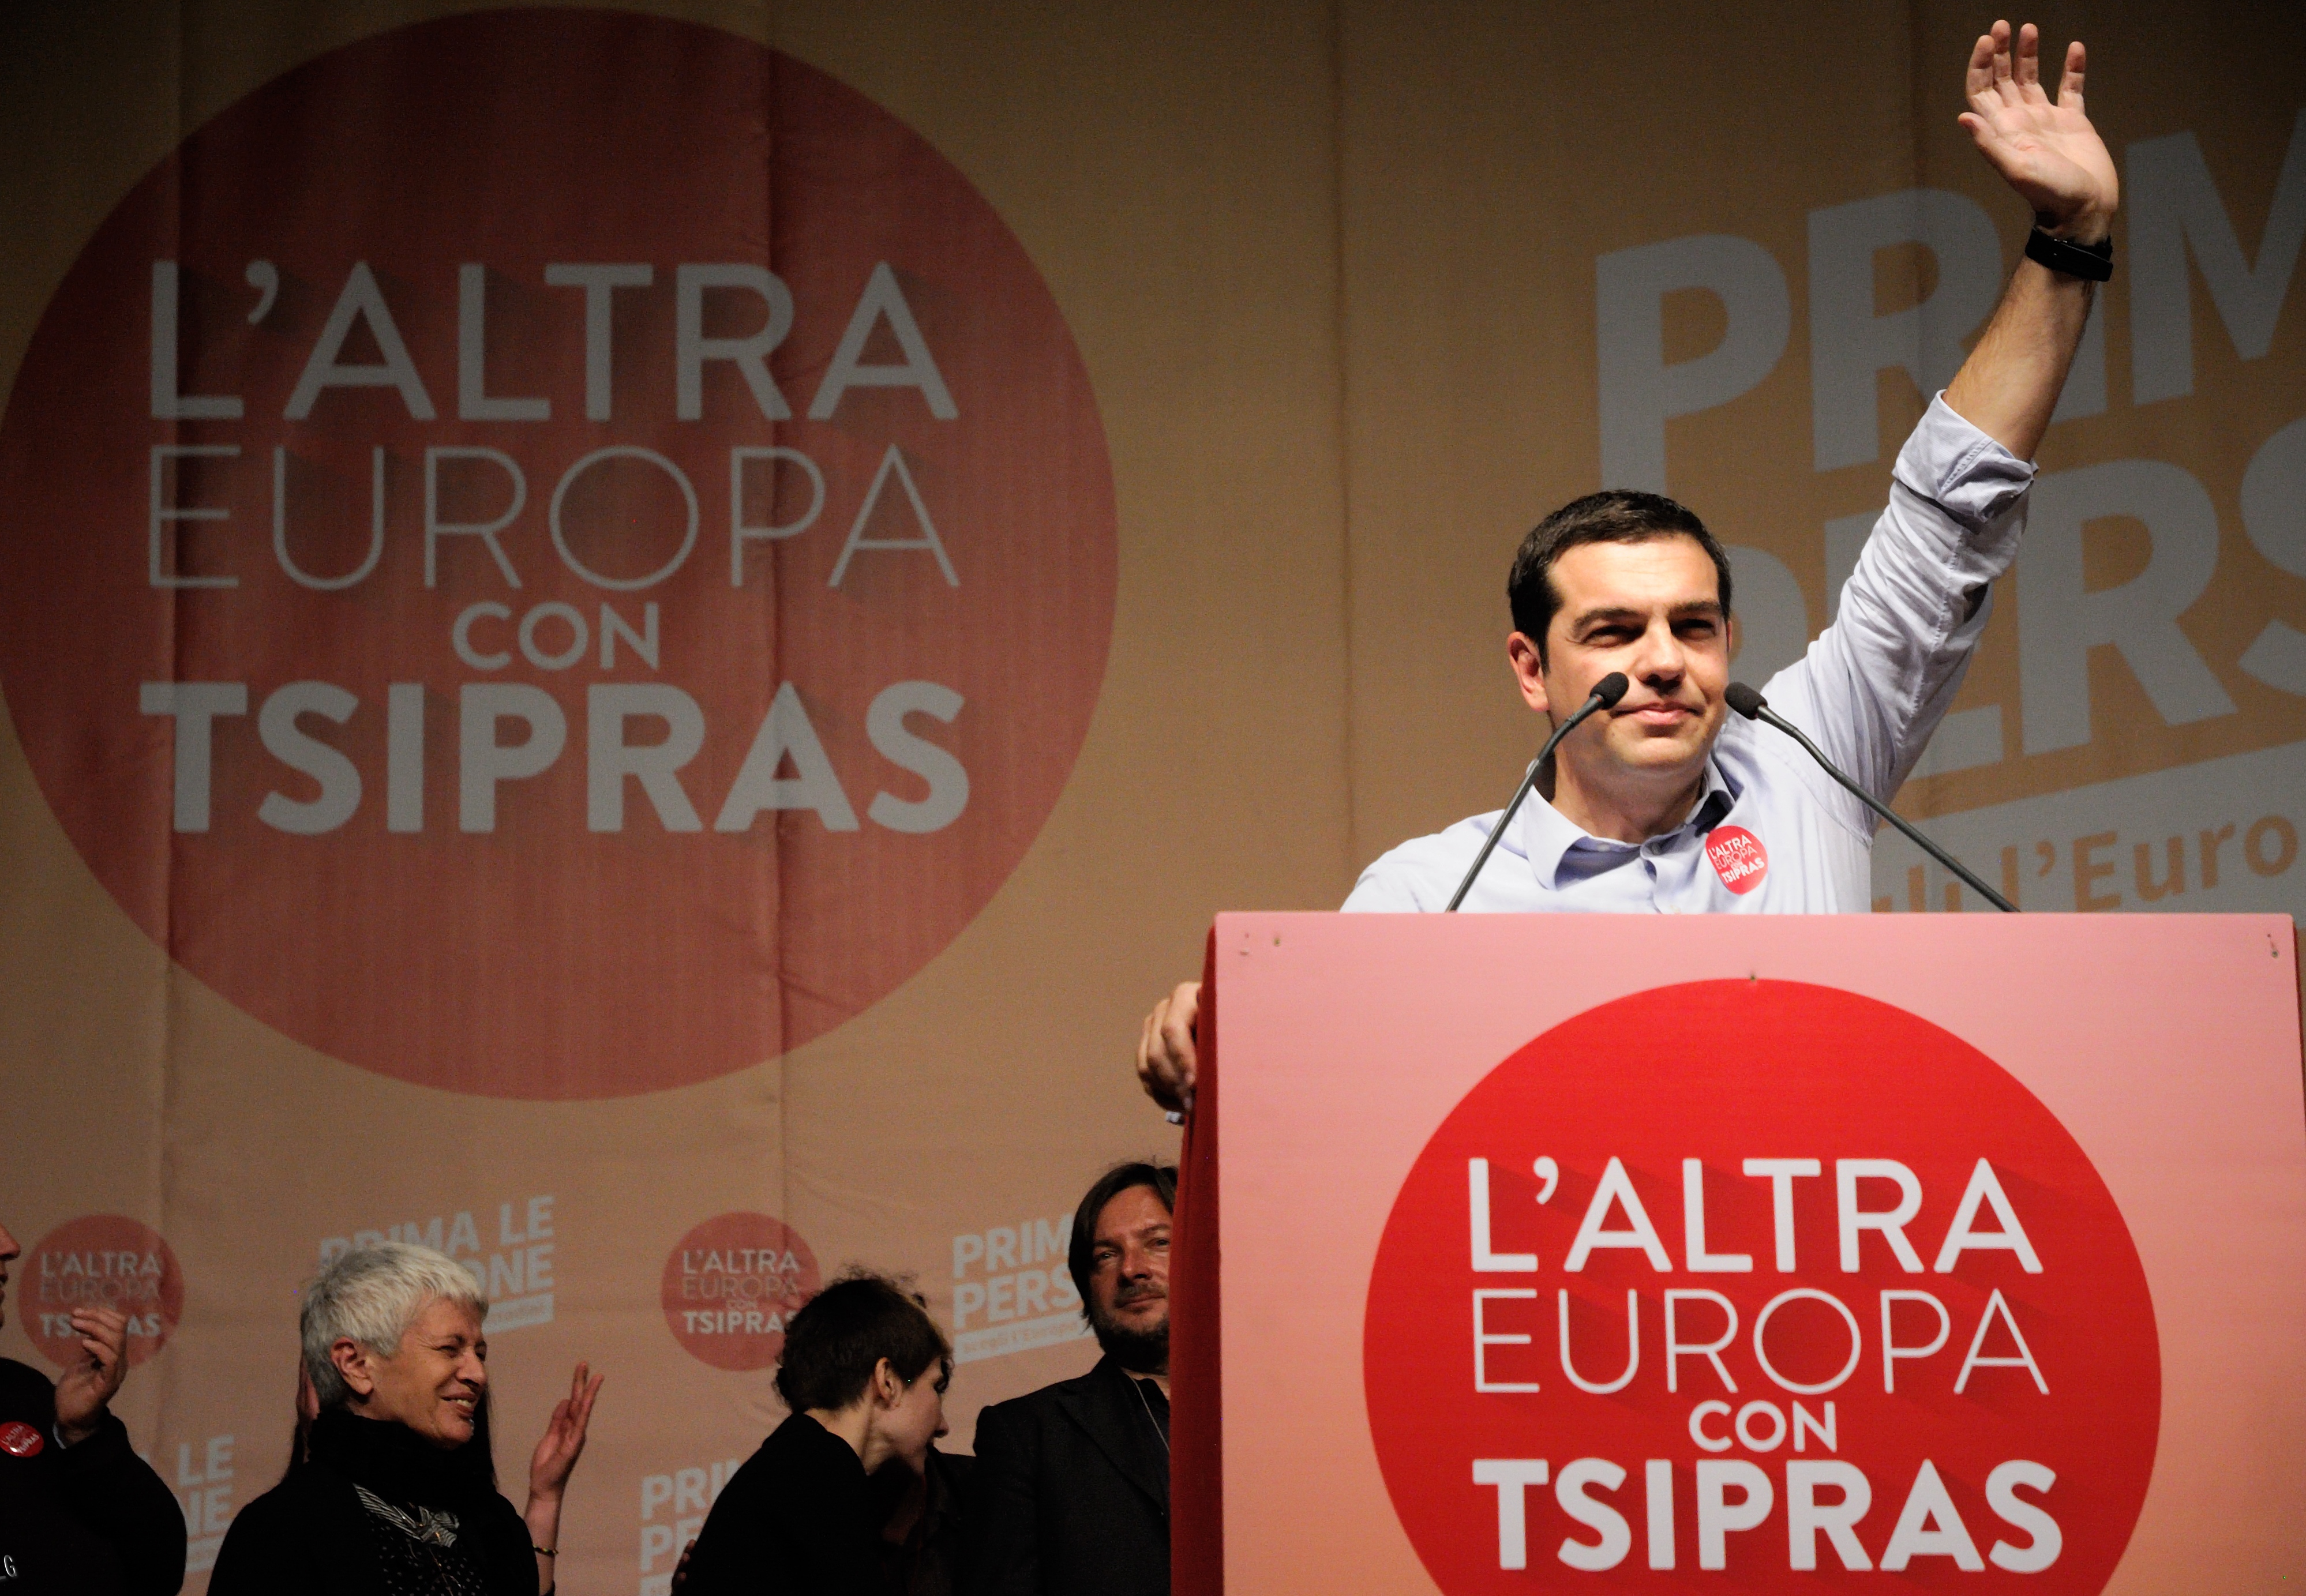 Tsipras’s tie - La cravatta di Tsipras in inglese-